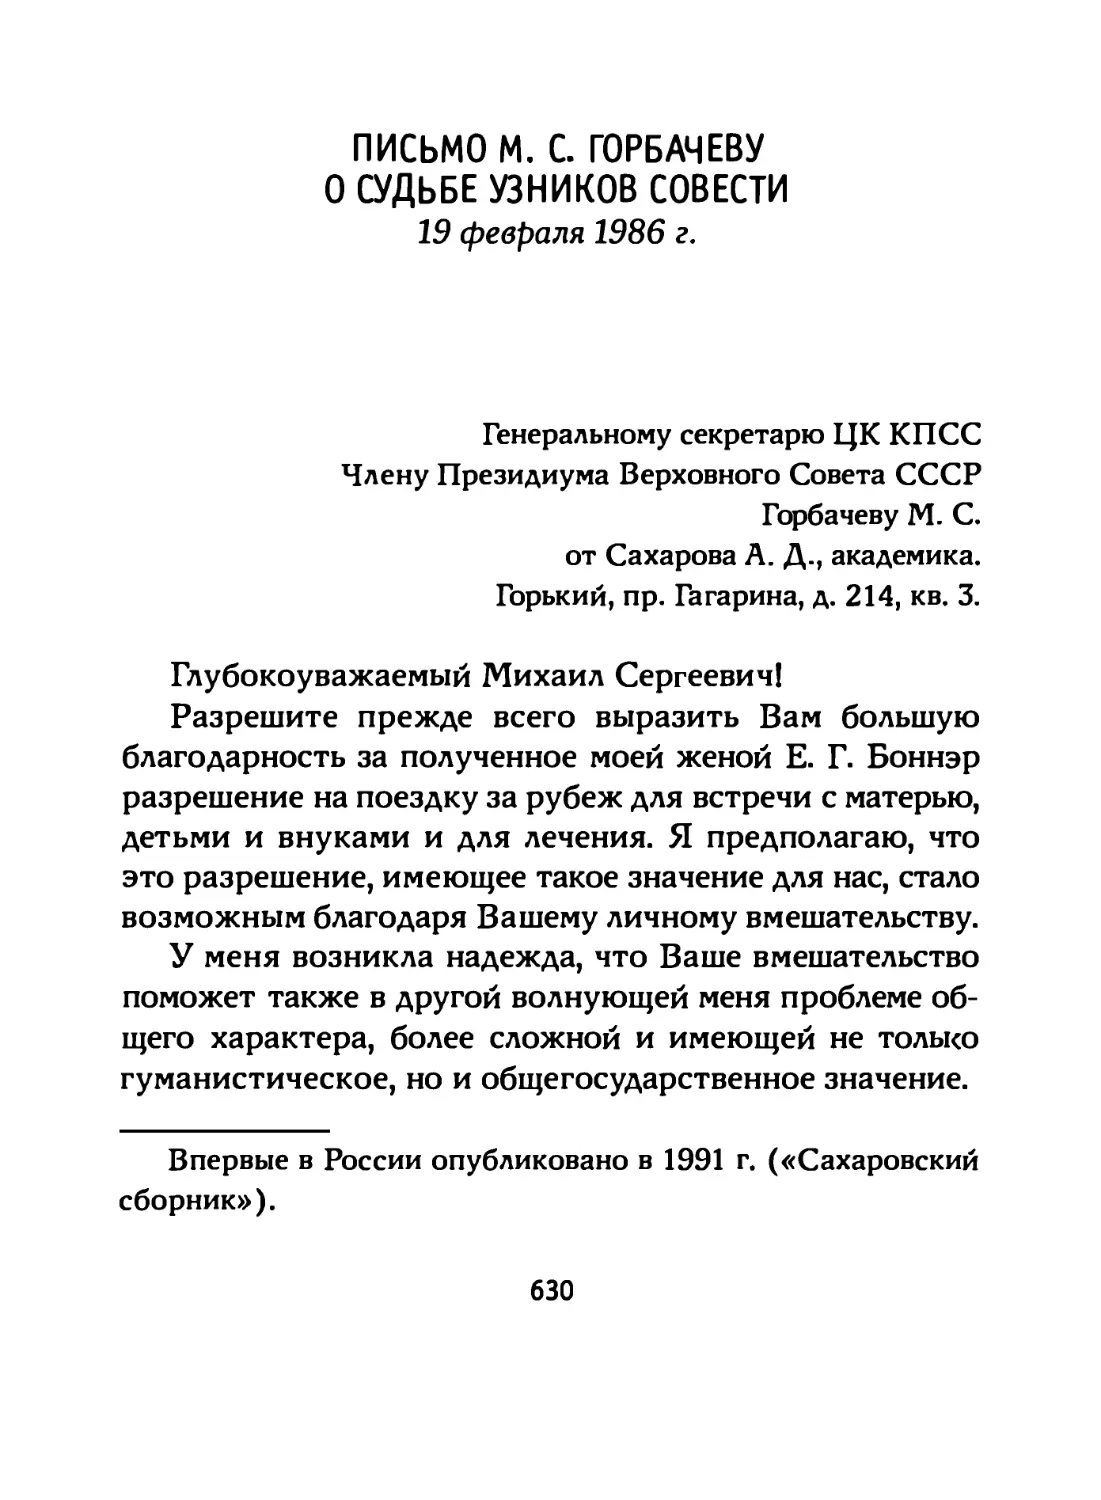 Письмо М. С. Горбачеву о судьбе узников совести (19 февраля 1986 г.)